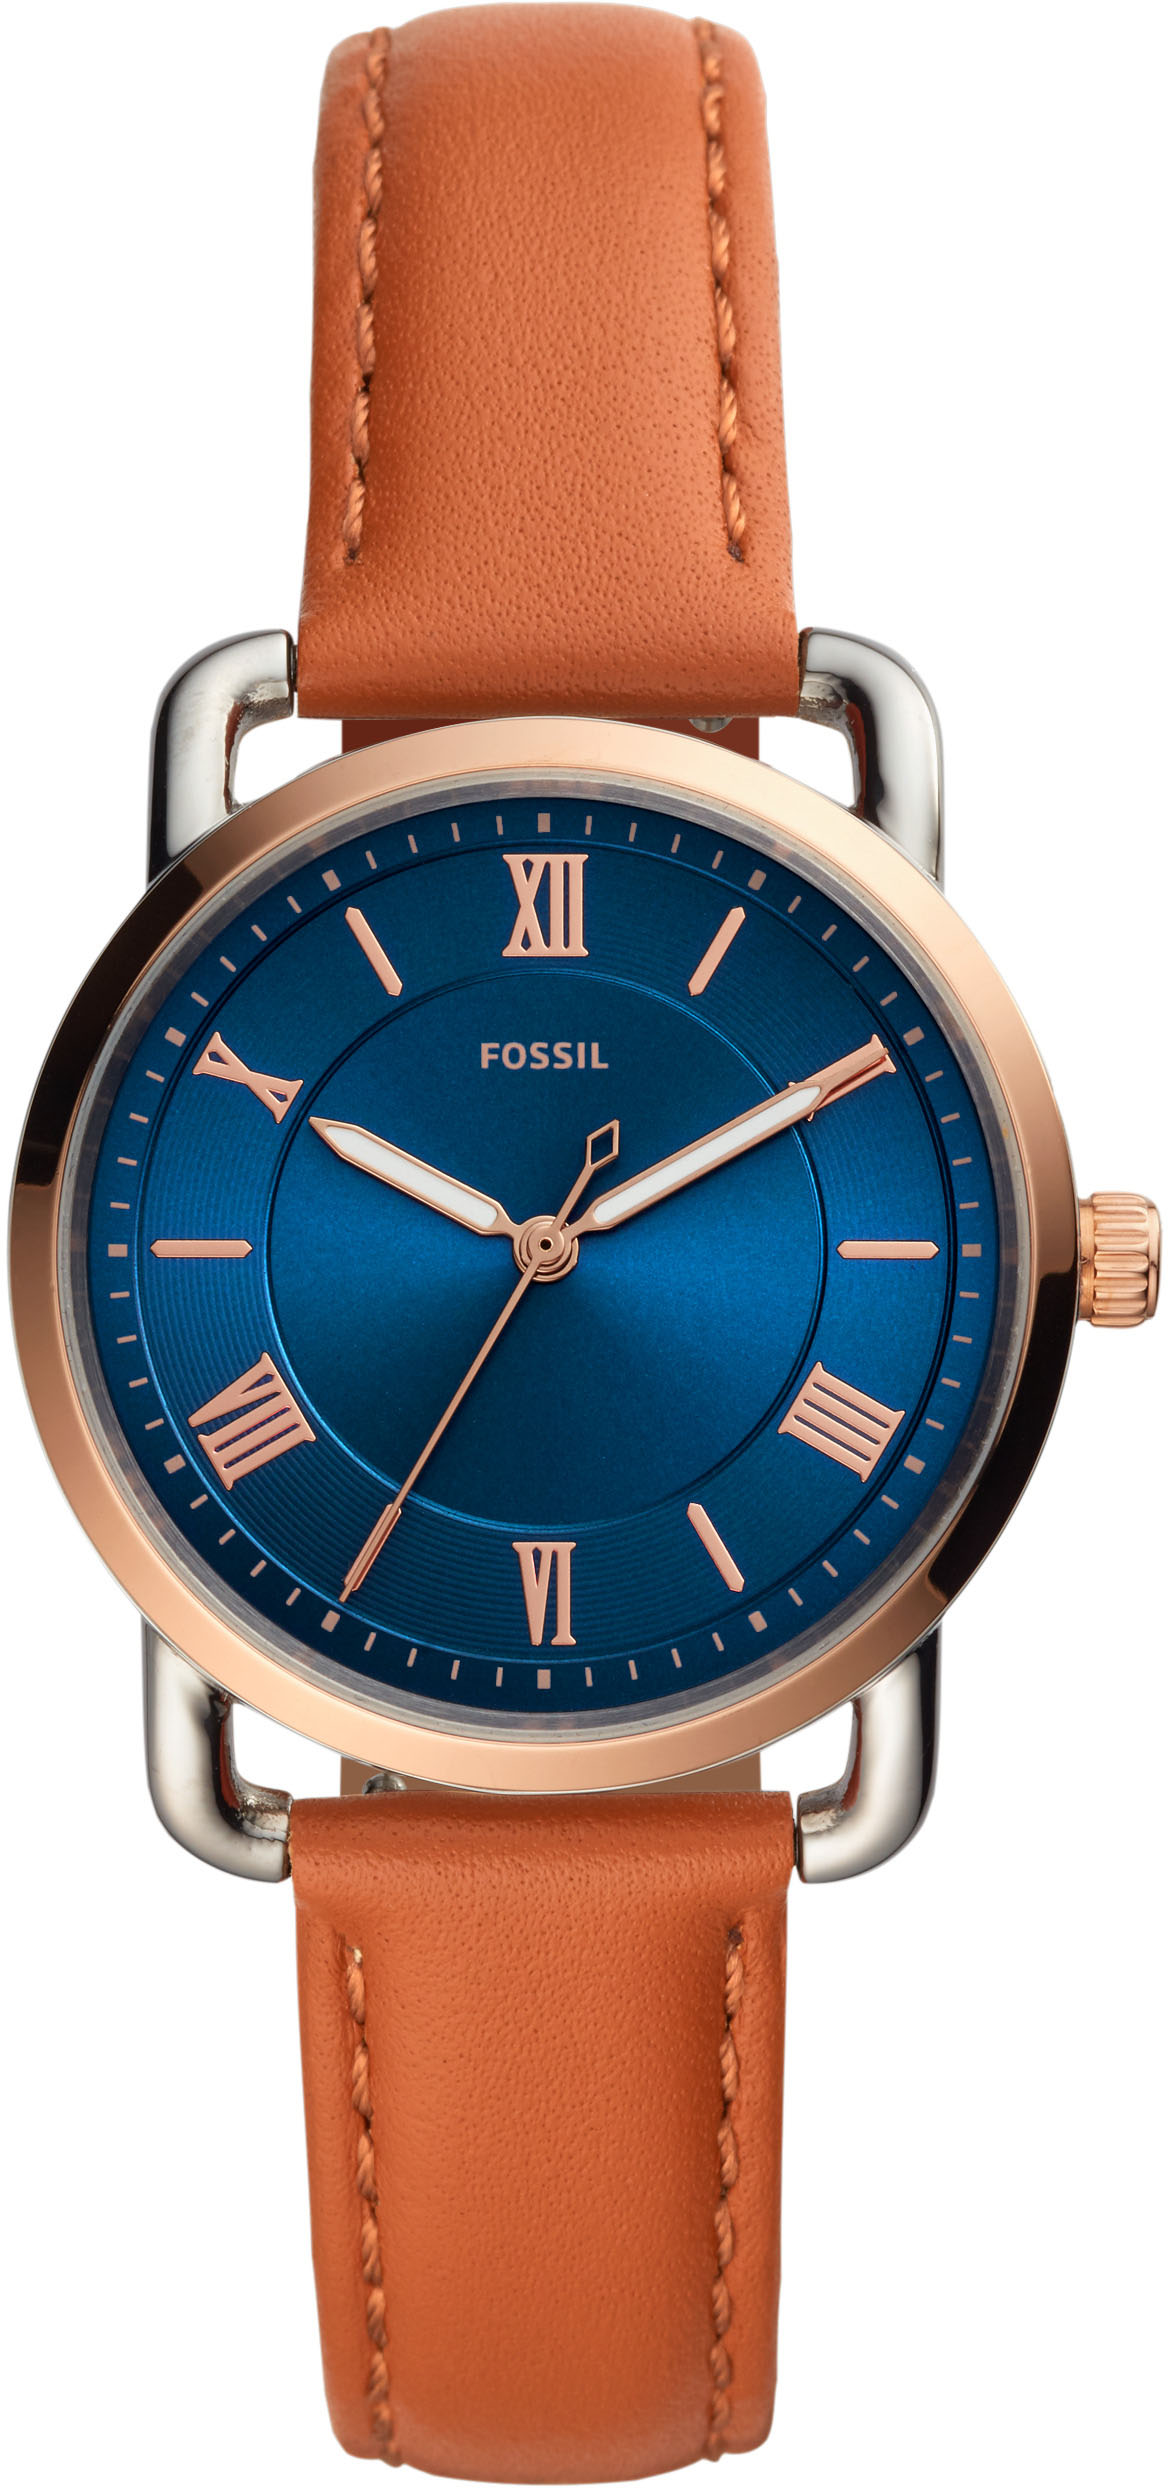 Fossil Uhren blau günstig kaufen » I'm walking